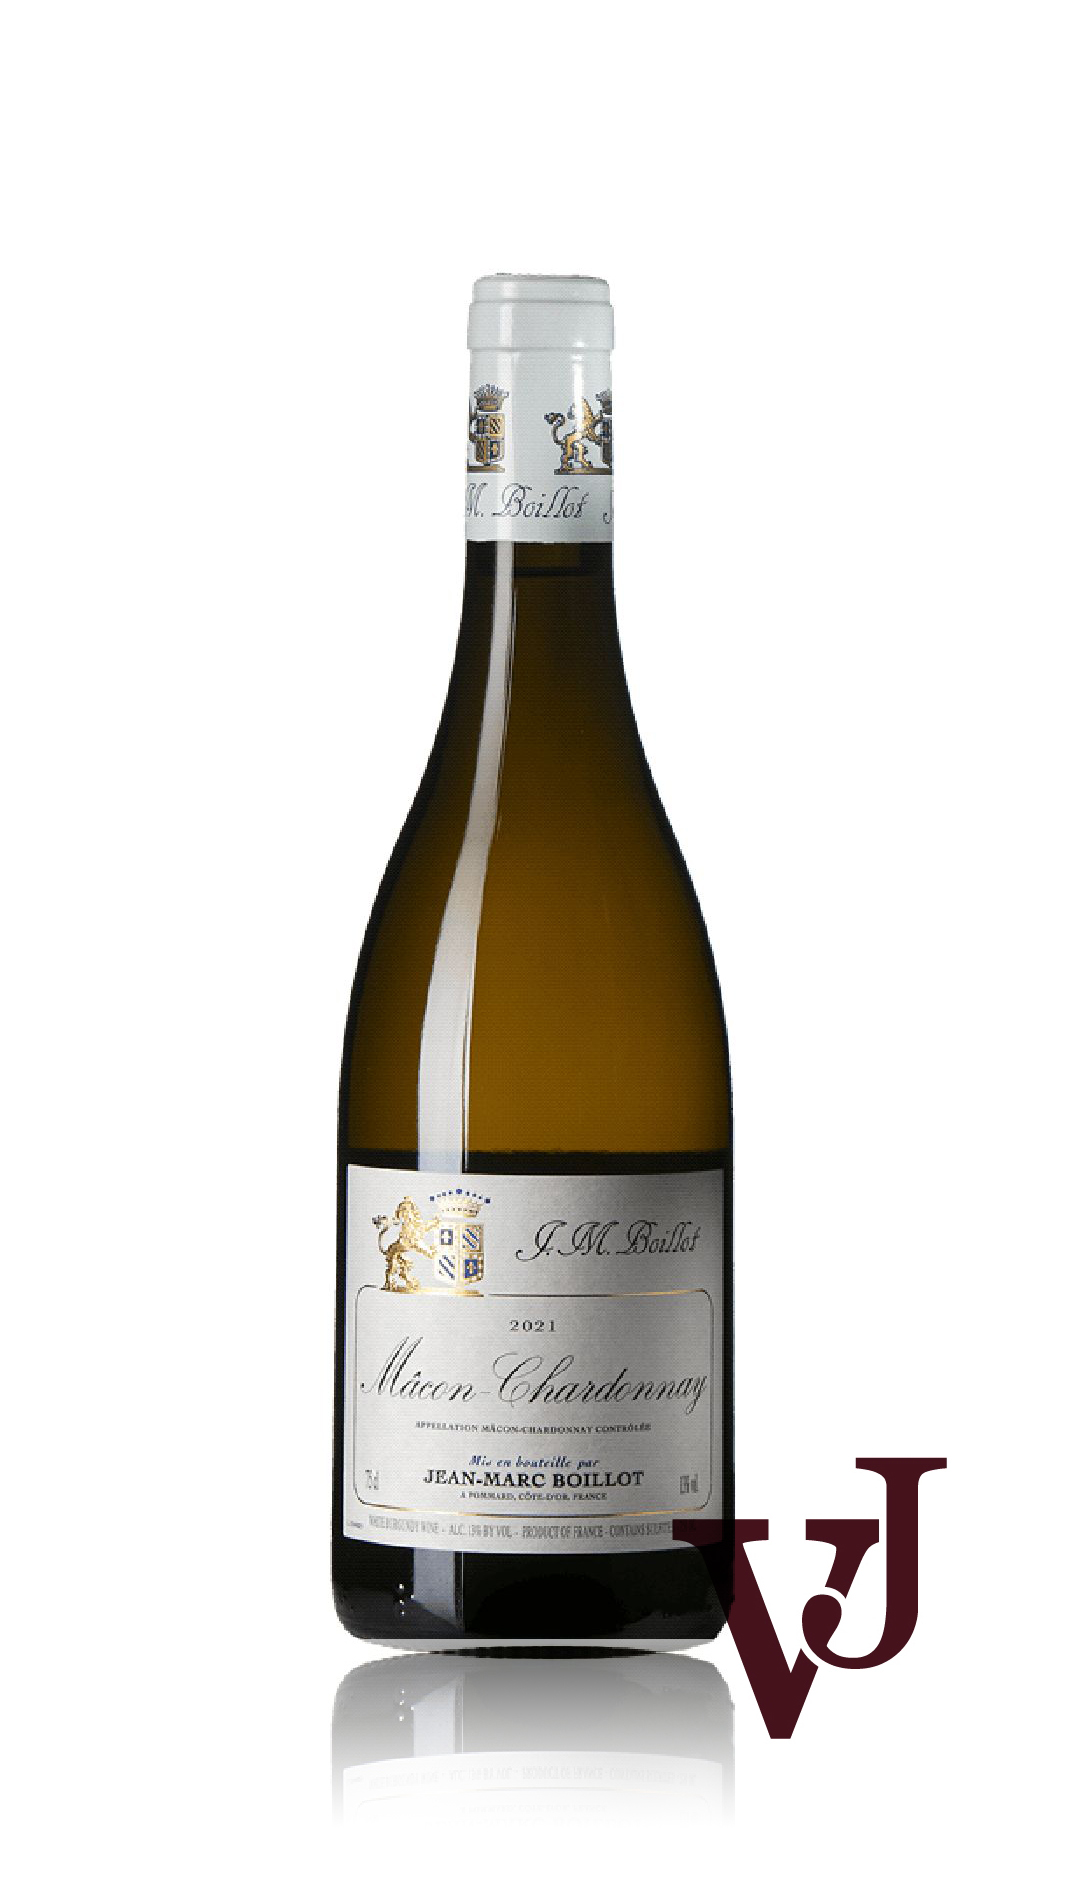 Vitt Vin - Jean-Marc Boillot Mâcon Chardonnay 2021 artikel nummer 9017601 från producenten Jean-Marc Boillot från området